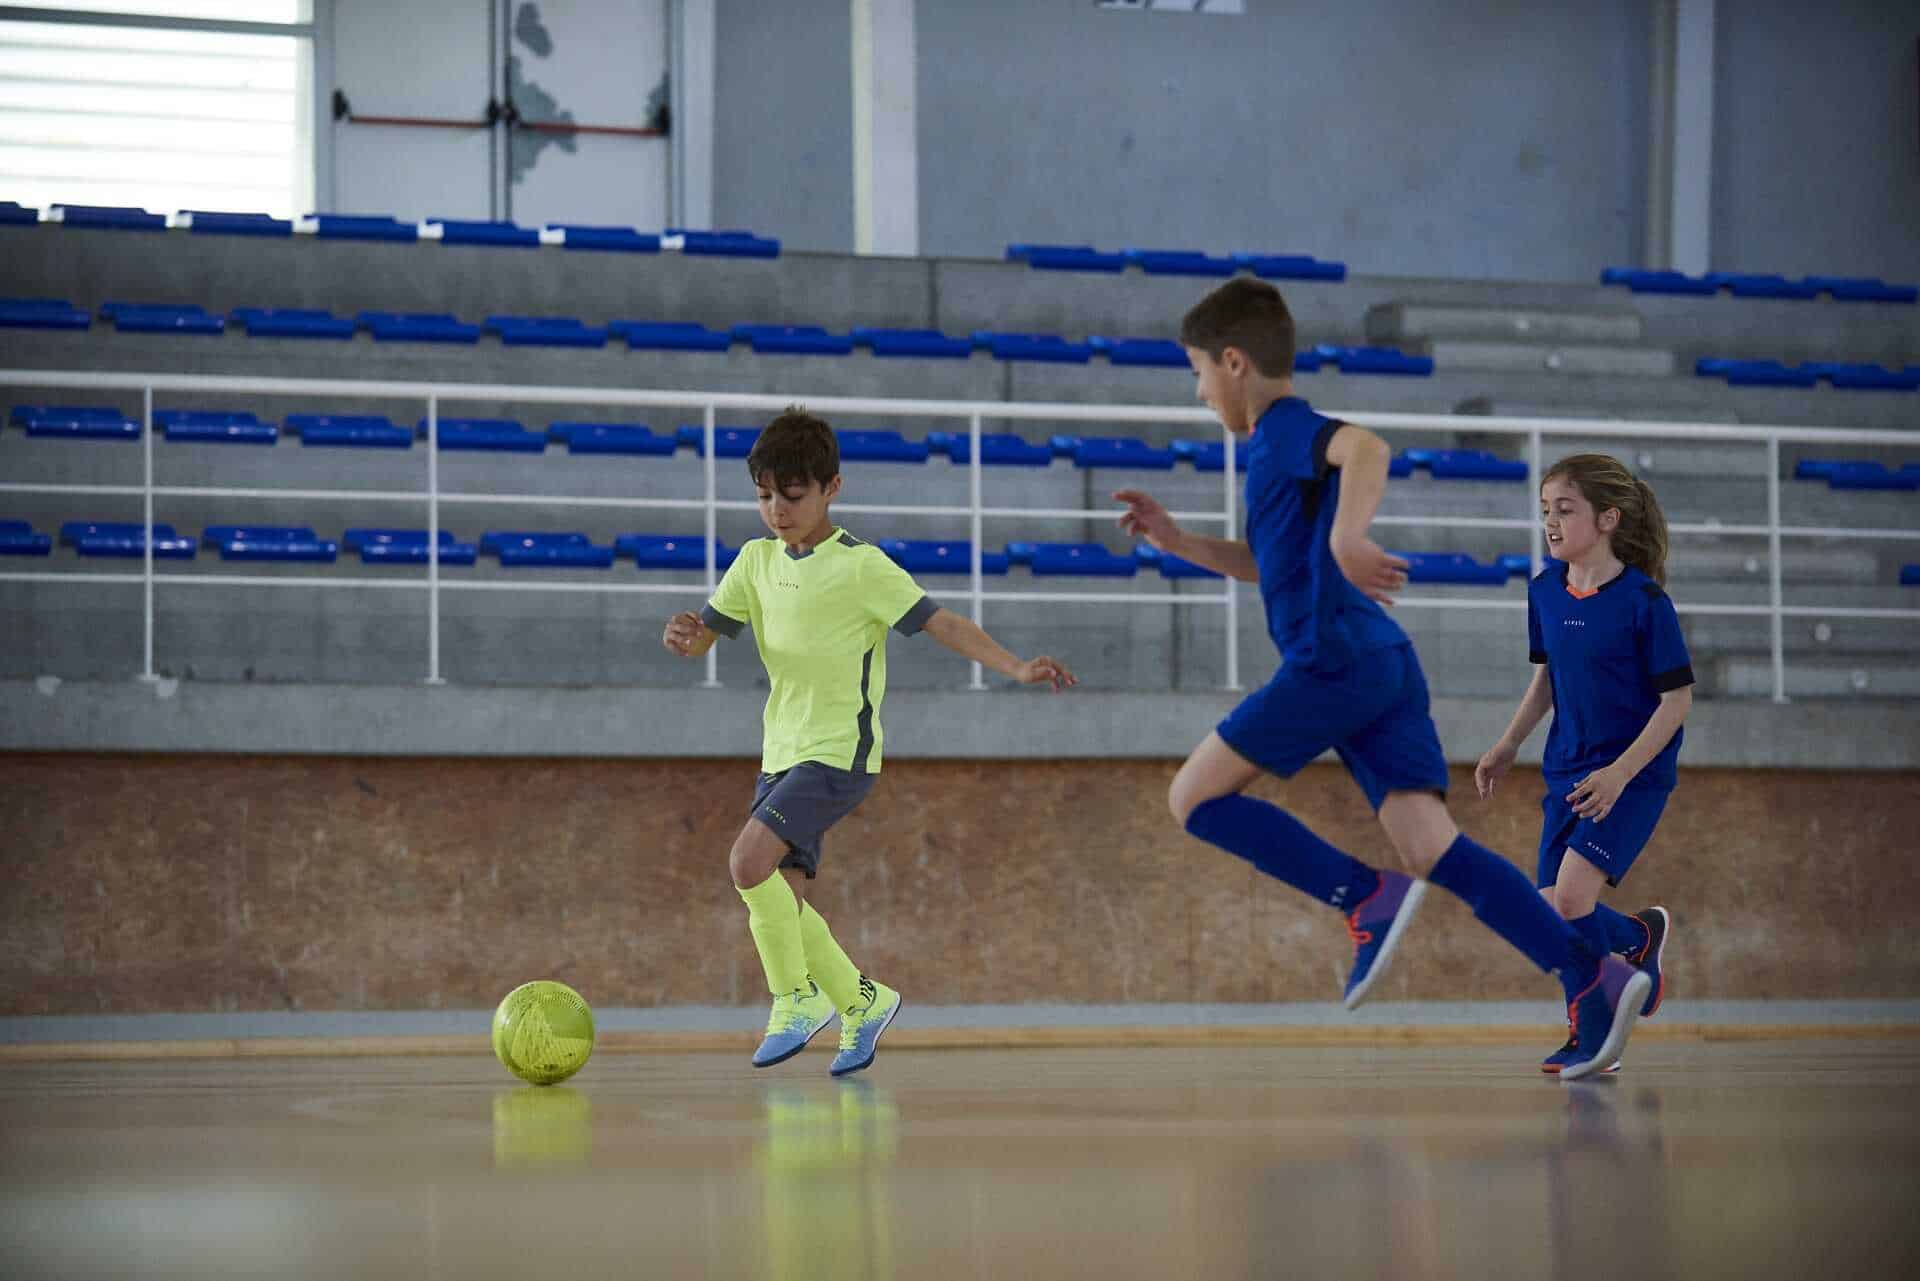 Piłka nożna dla dziecka – jakie korzyści przynoszą treningi piłki dla dzieci?